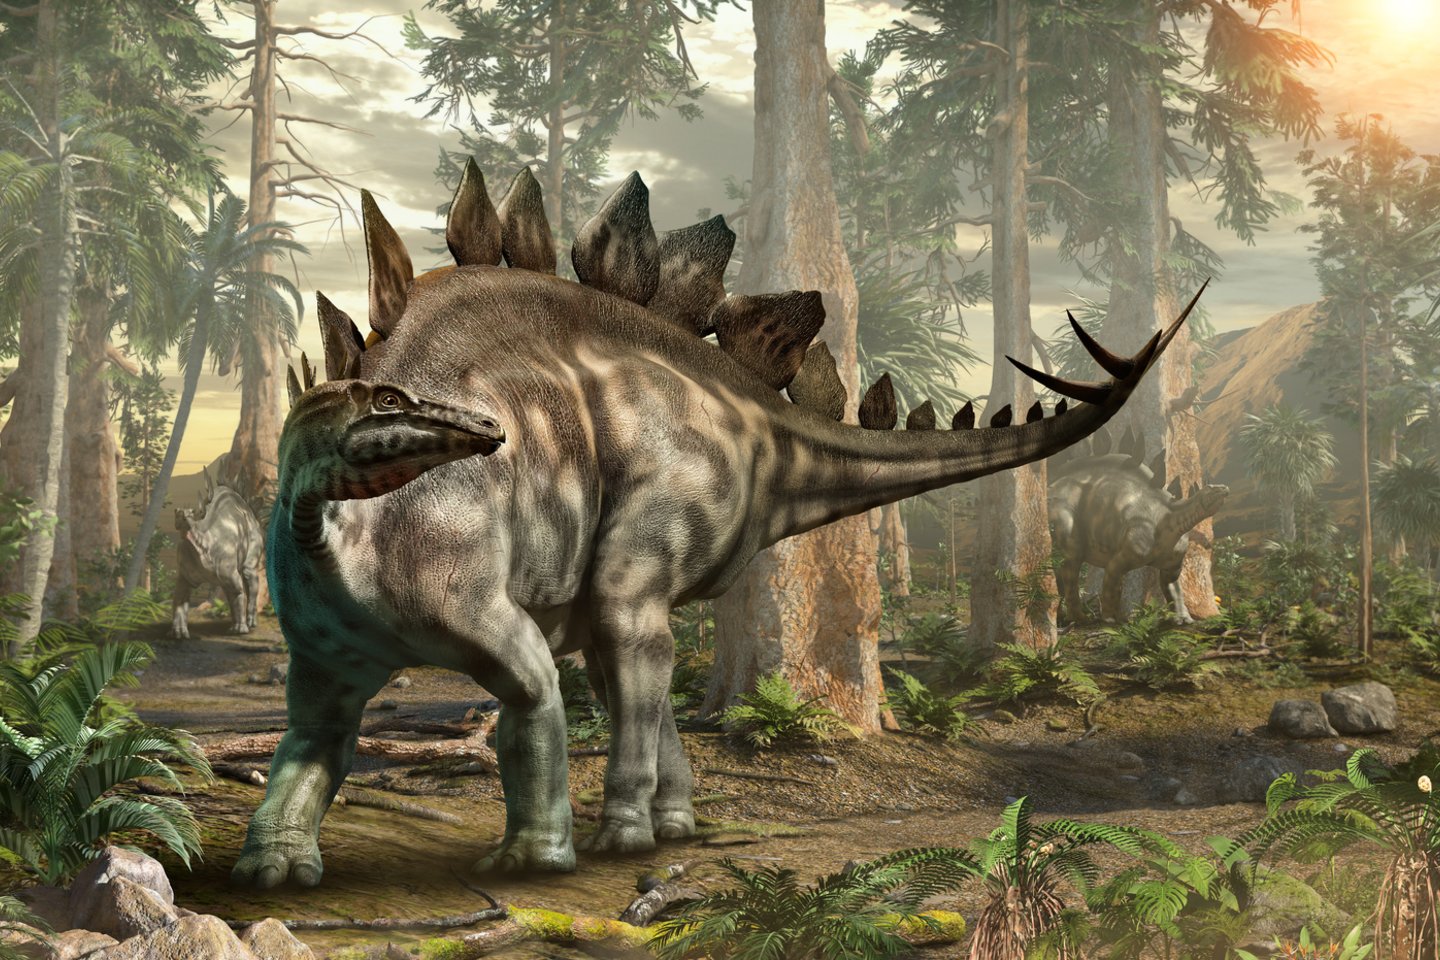  Atrastas kreidos periode gyvenęs krokodilas, o jo skrandyje – suvalgytas dinozauras. <br> 123rf iliustr.